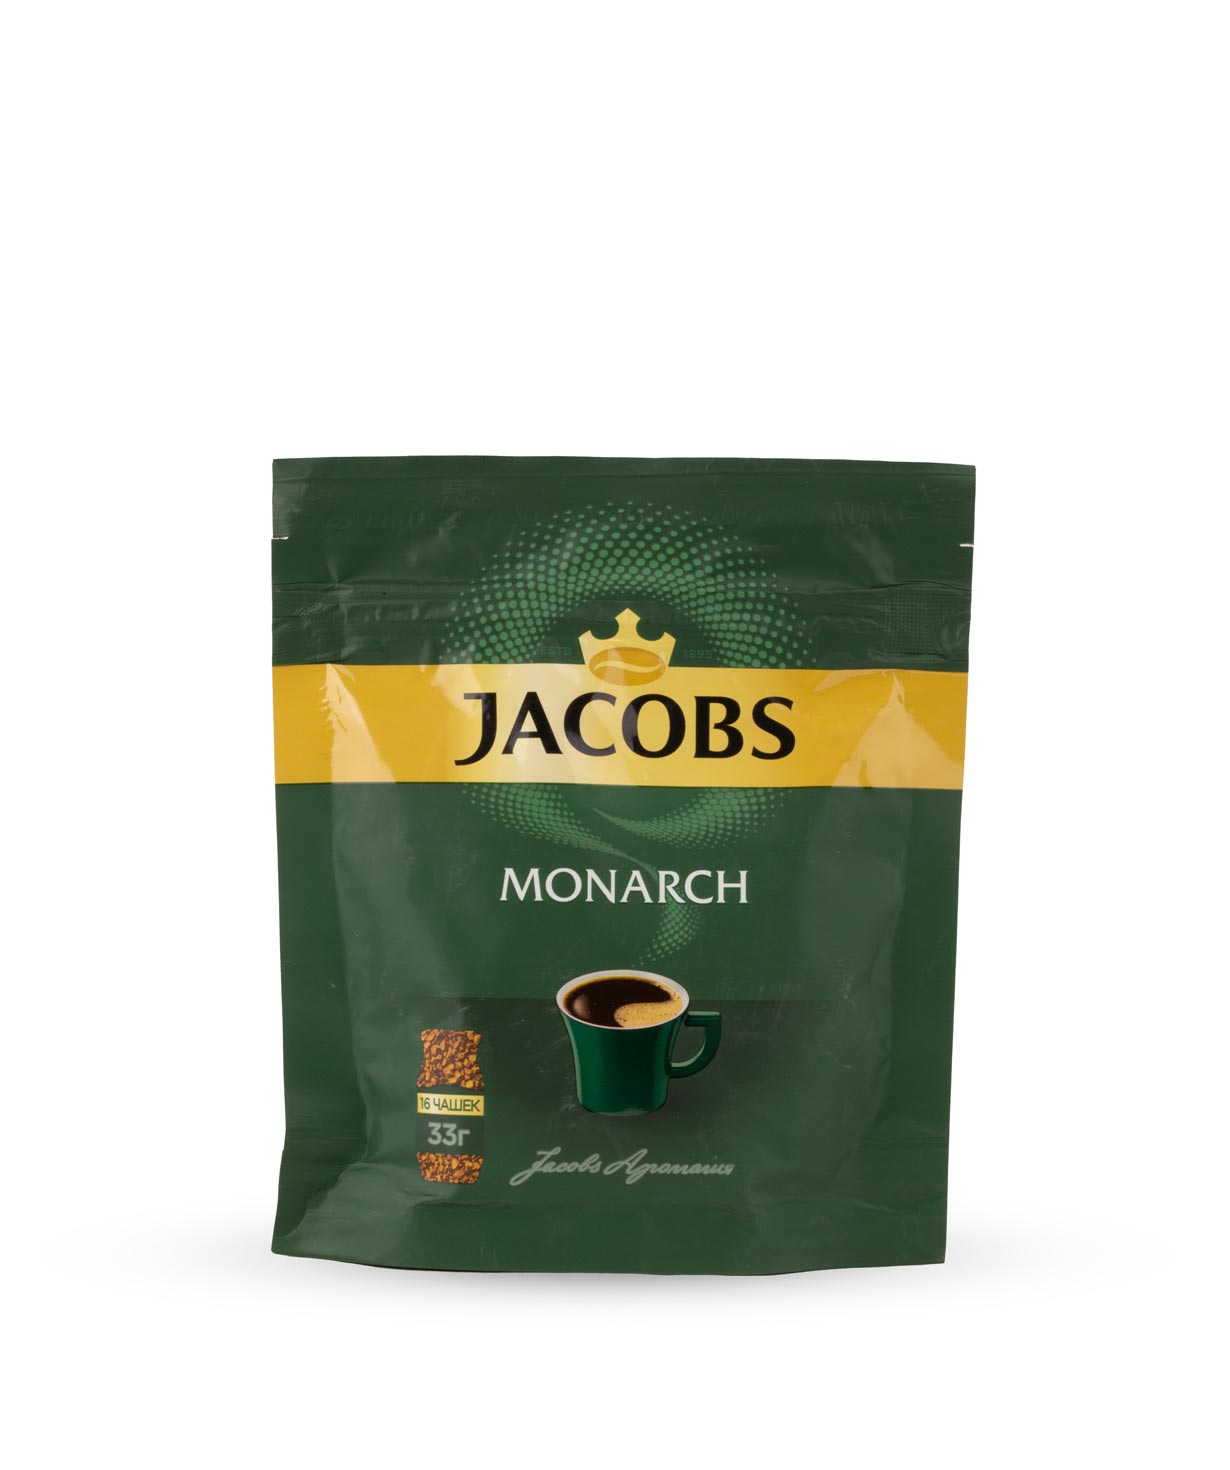 Լուծվող սուրճ «Jacobs Monarch» 33գ